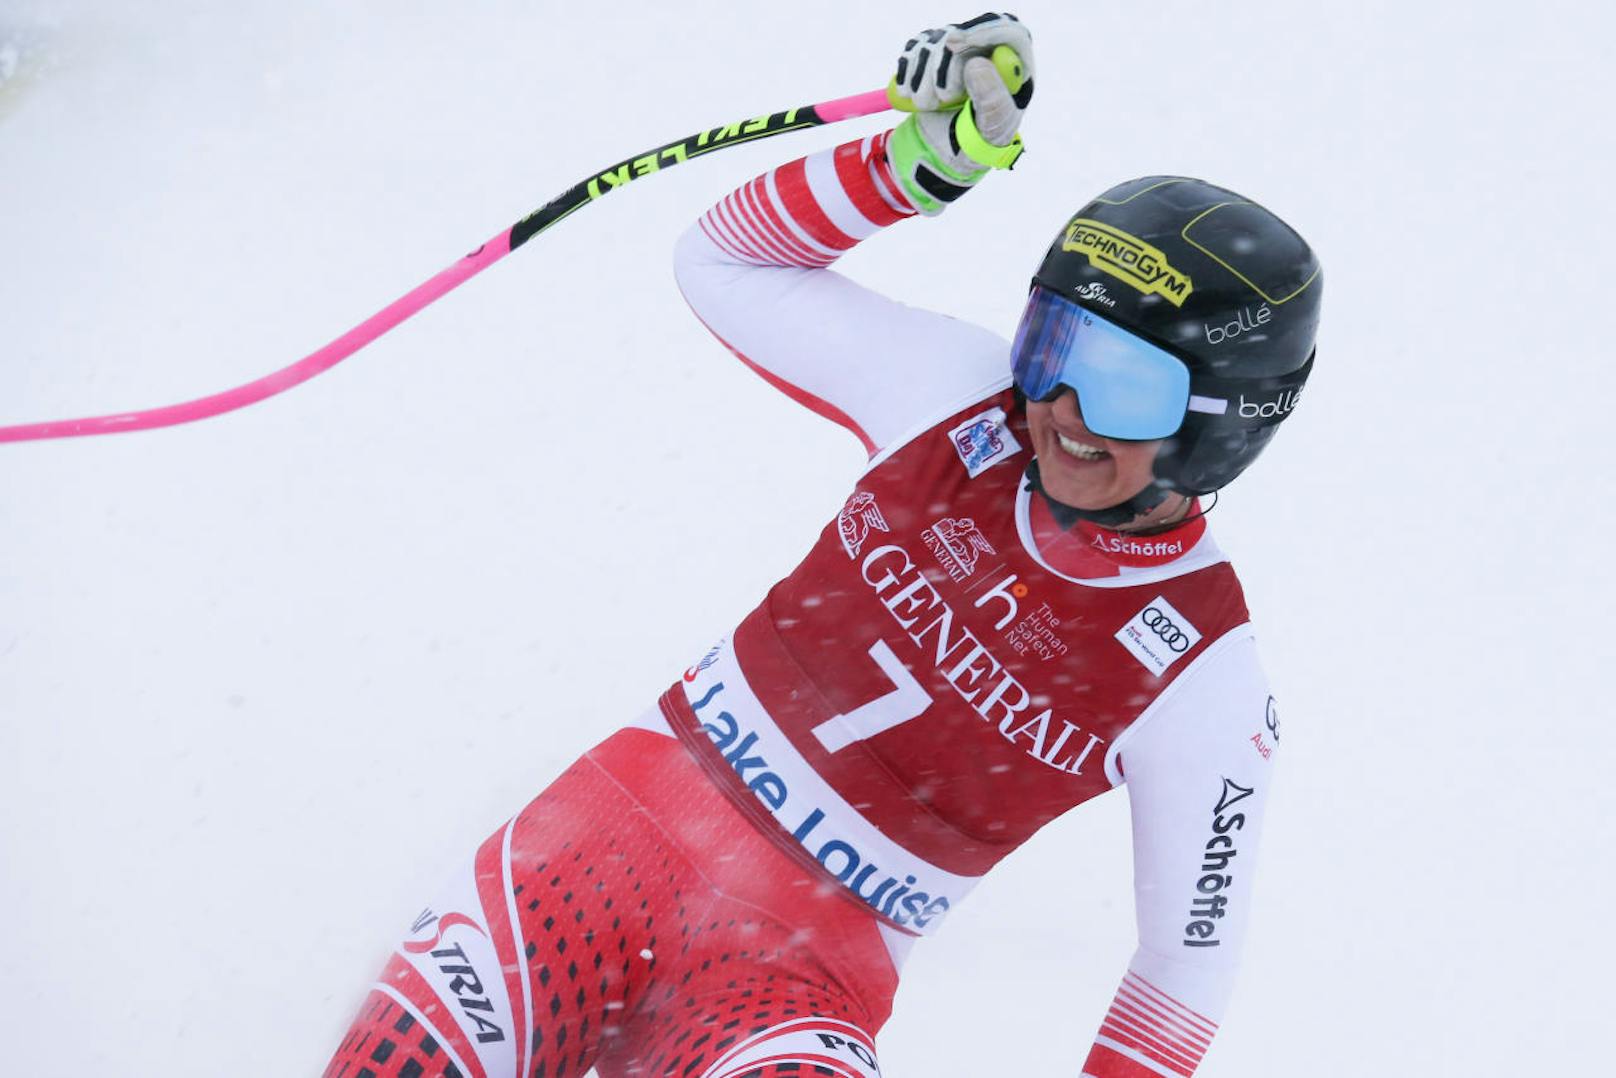 Stephanie Venier freut sich im Rennen über den dritten Platz in Lake Louise. Der Sieg ging sensationell an die Tschechin Ester Ledecka. Sie fing mit der Nummer 26 noch die vermeintliche Siegerin Corinne Suter (Schweiz) ab.

Ledecka ist Olympiasiegerin im Ski- und Snowboard-Sport. Das macht sie zur absoluten Ausnahmeathletin.